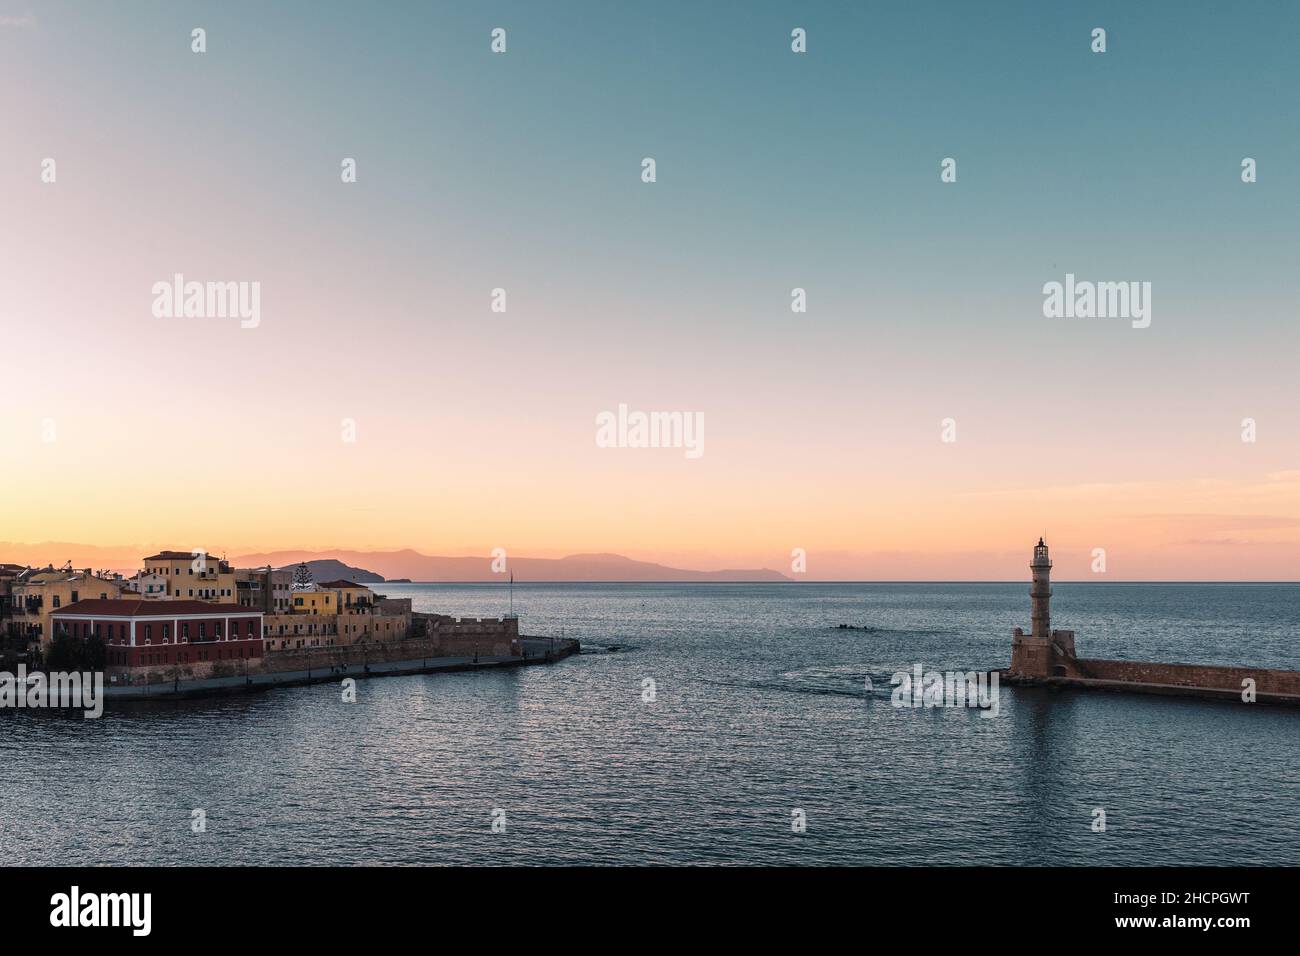 Bellissimo tramonto al vecchio porto veneziano e faro di Chania, Creta Island - Grecia Foto Stock